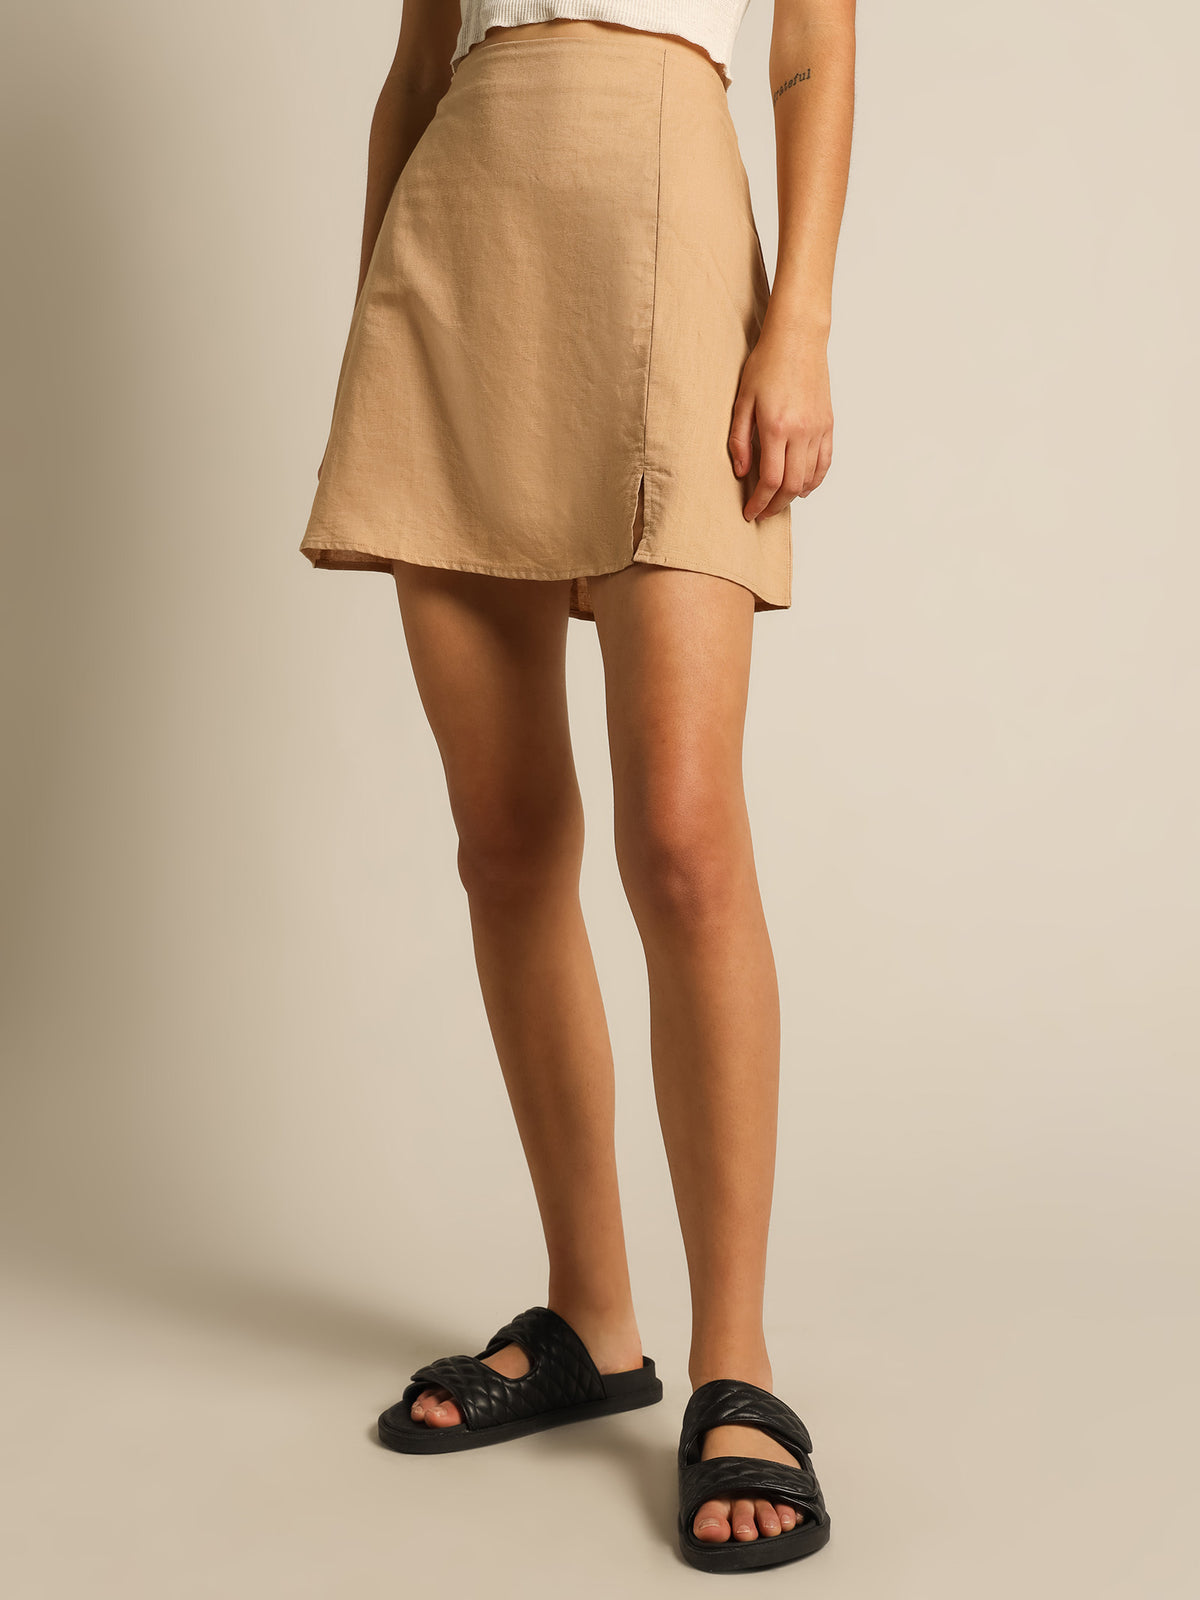 Nima Linen Mini Skirt in Caramel Brown